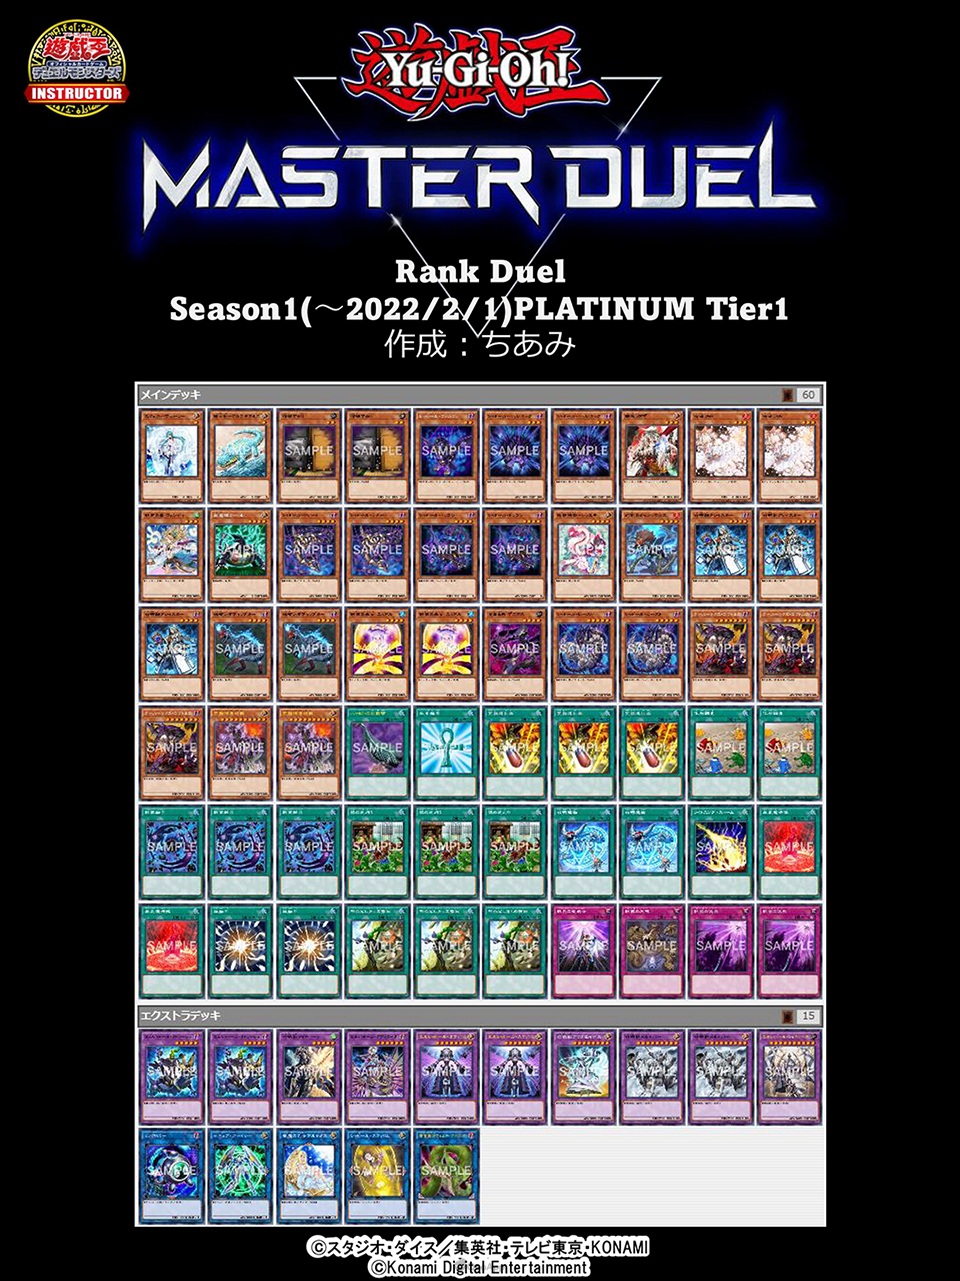 《遊戲王 Master Duel》突破千萬下載！Season 1白金牌組公開-第44張